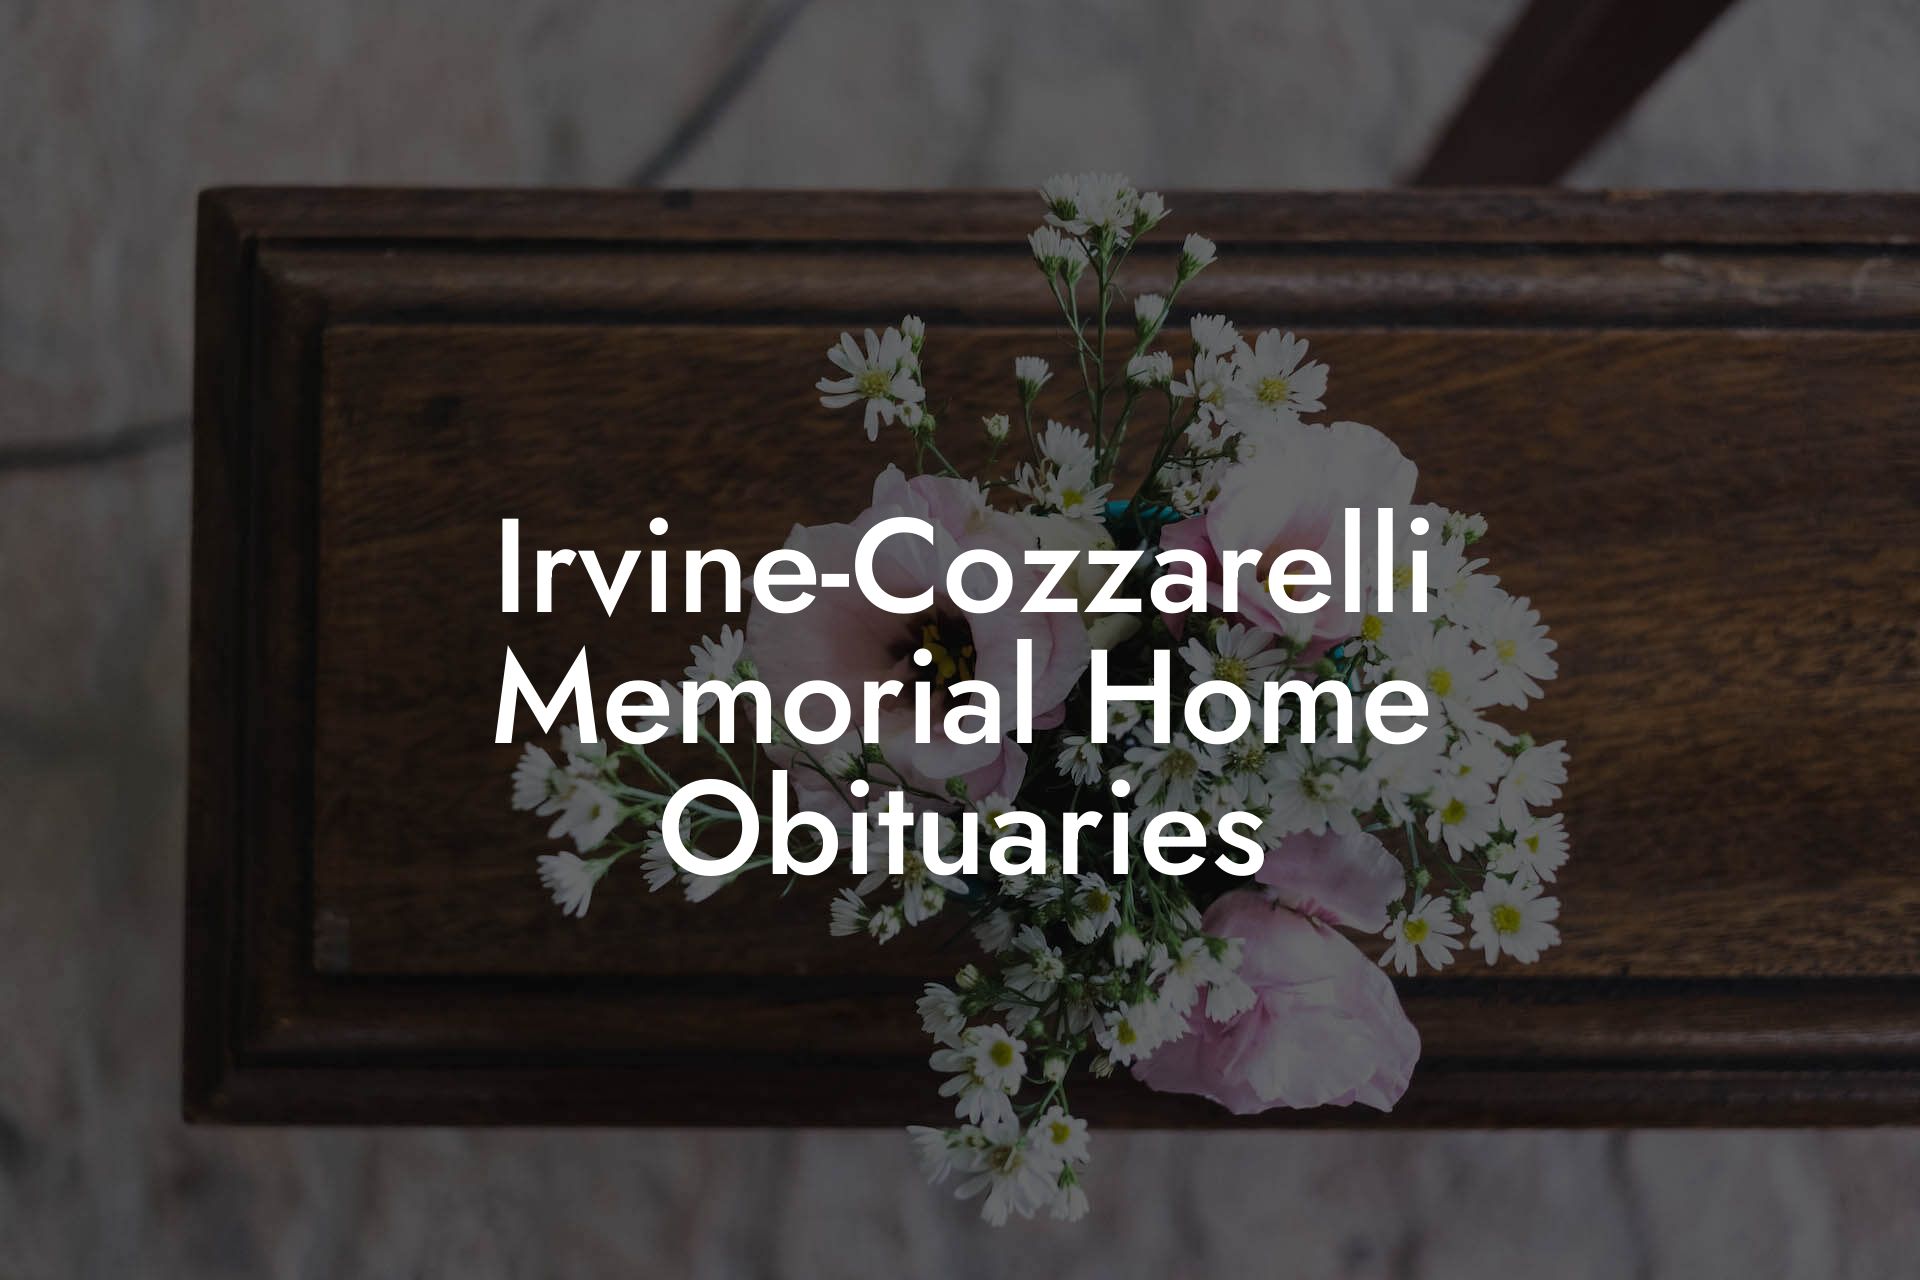 Irvine-Cozzarelli Memorial Home Obituaries